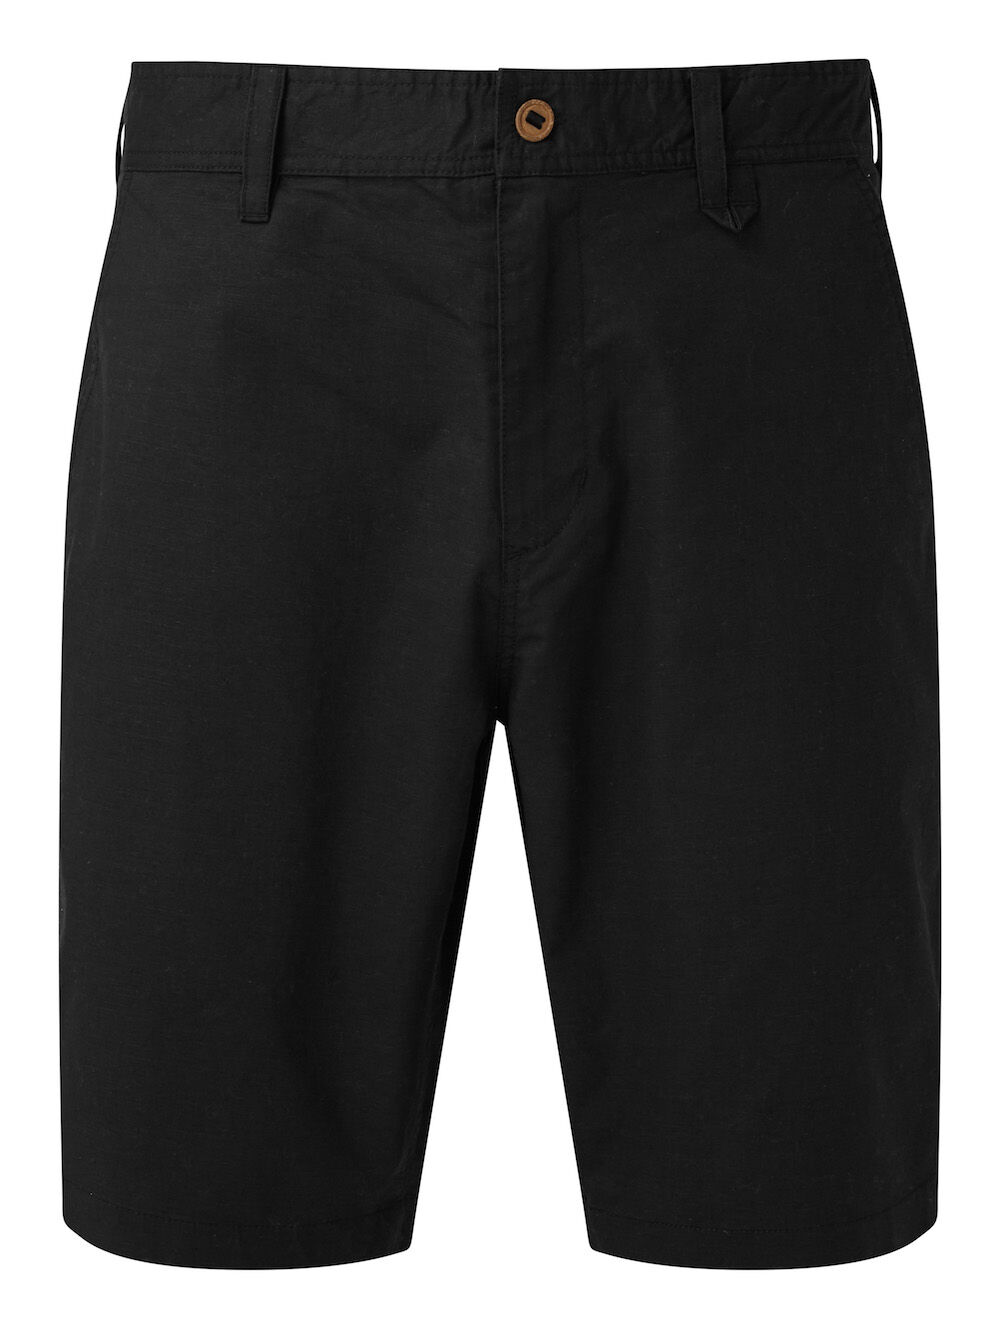 Tentree Preston Hemp Short - Pantalones cortos - Hombre